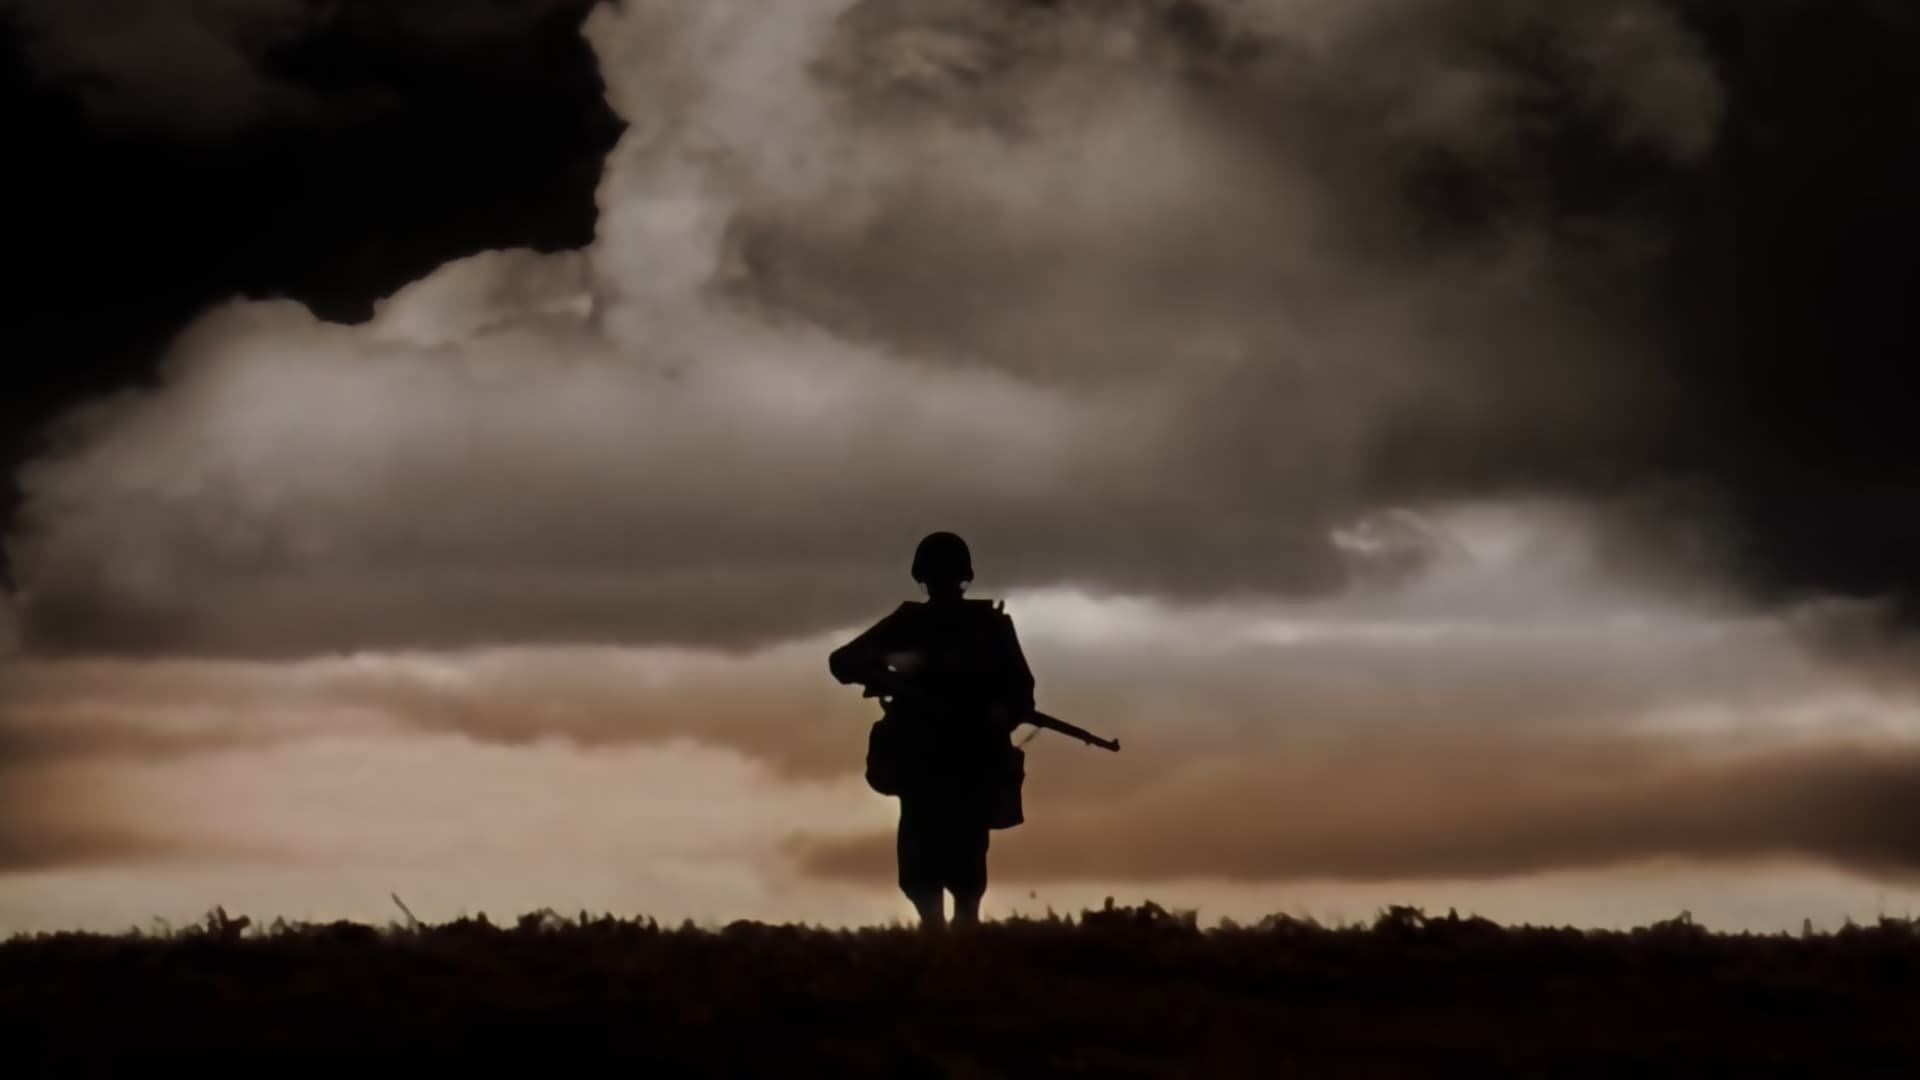 Film del D-Day: Salvate il soldato Ryan